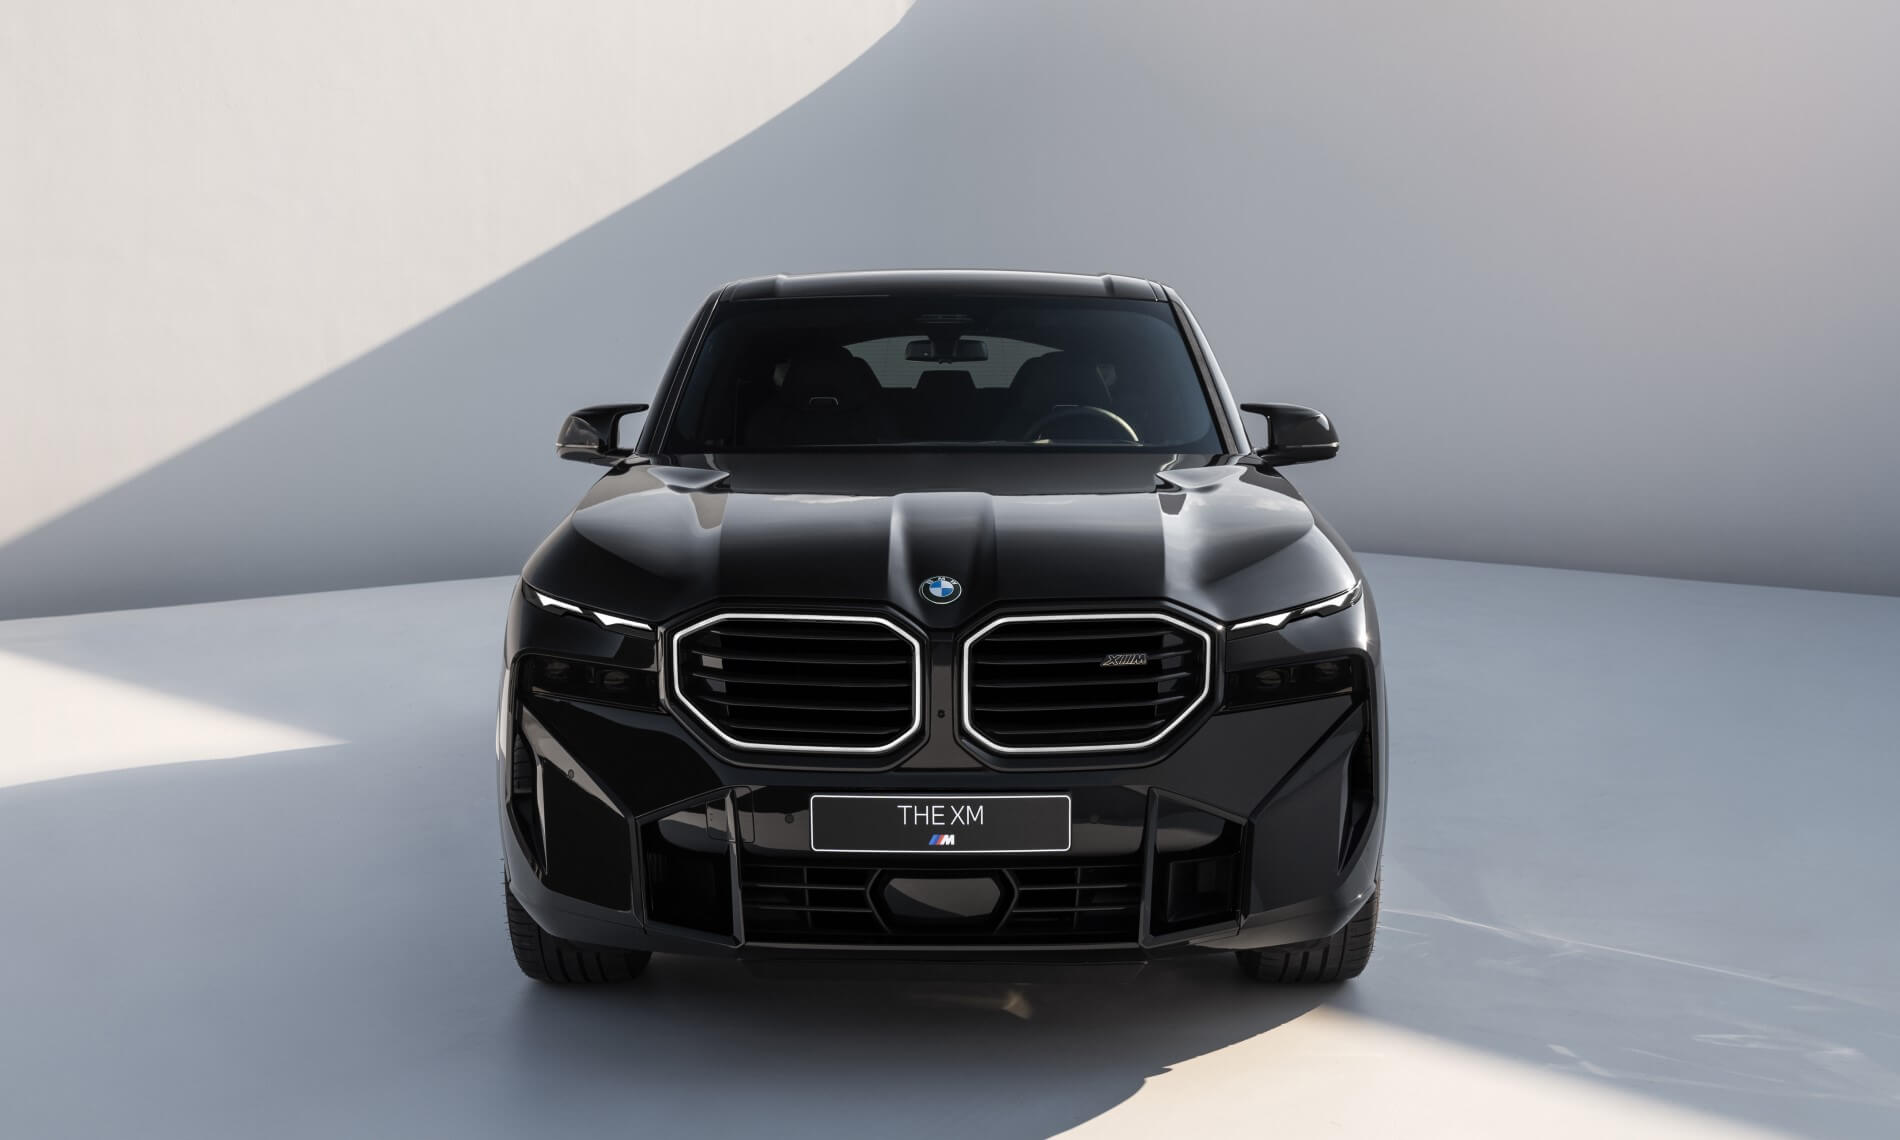 Production BMW XM Debuts [w/video]